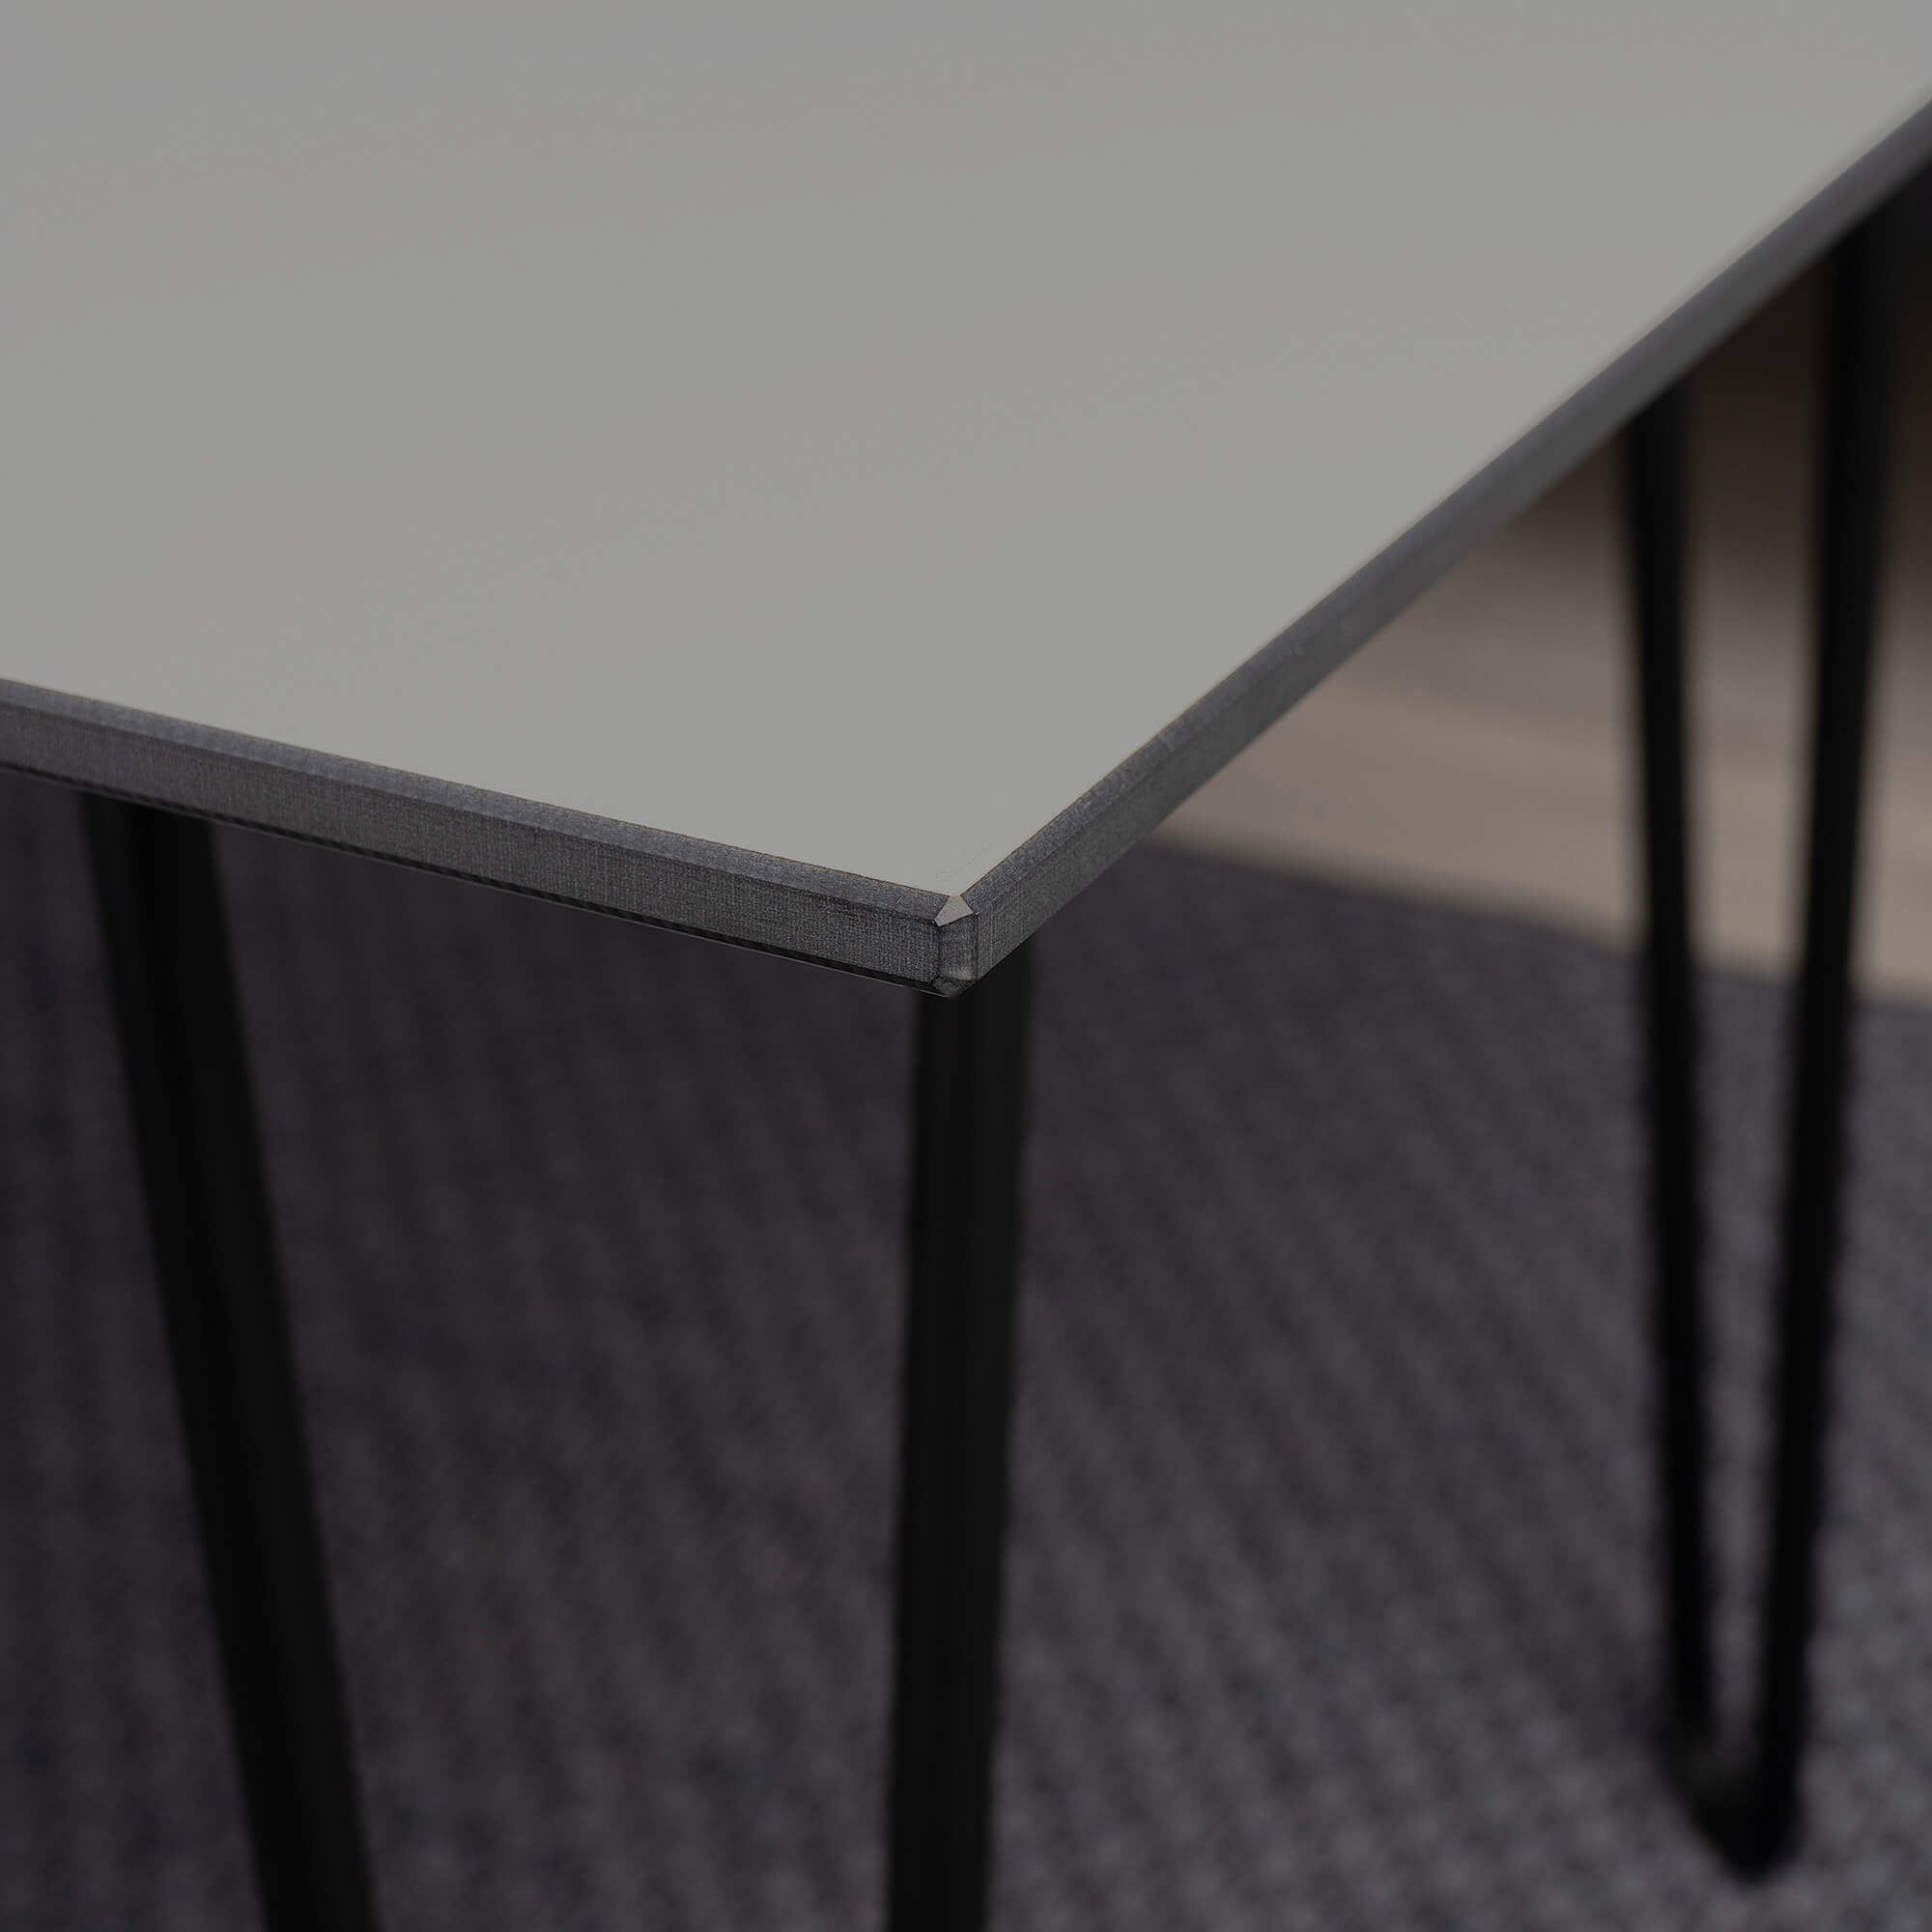 Square-coffee-table-80x80-cm-grey-black